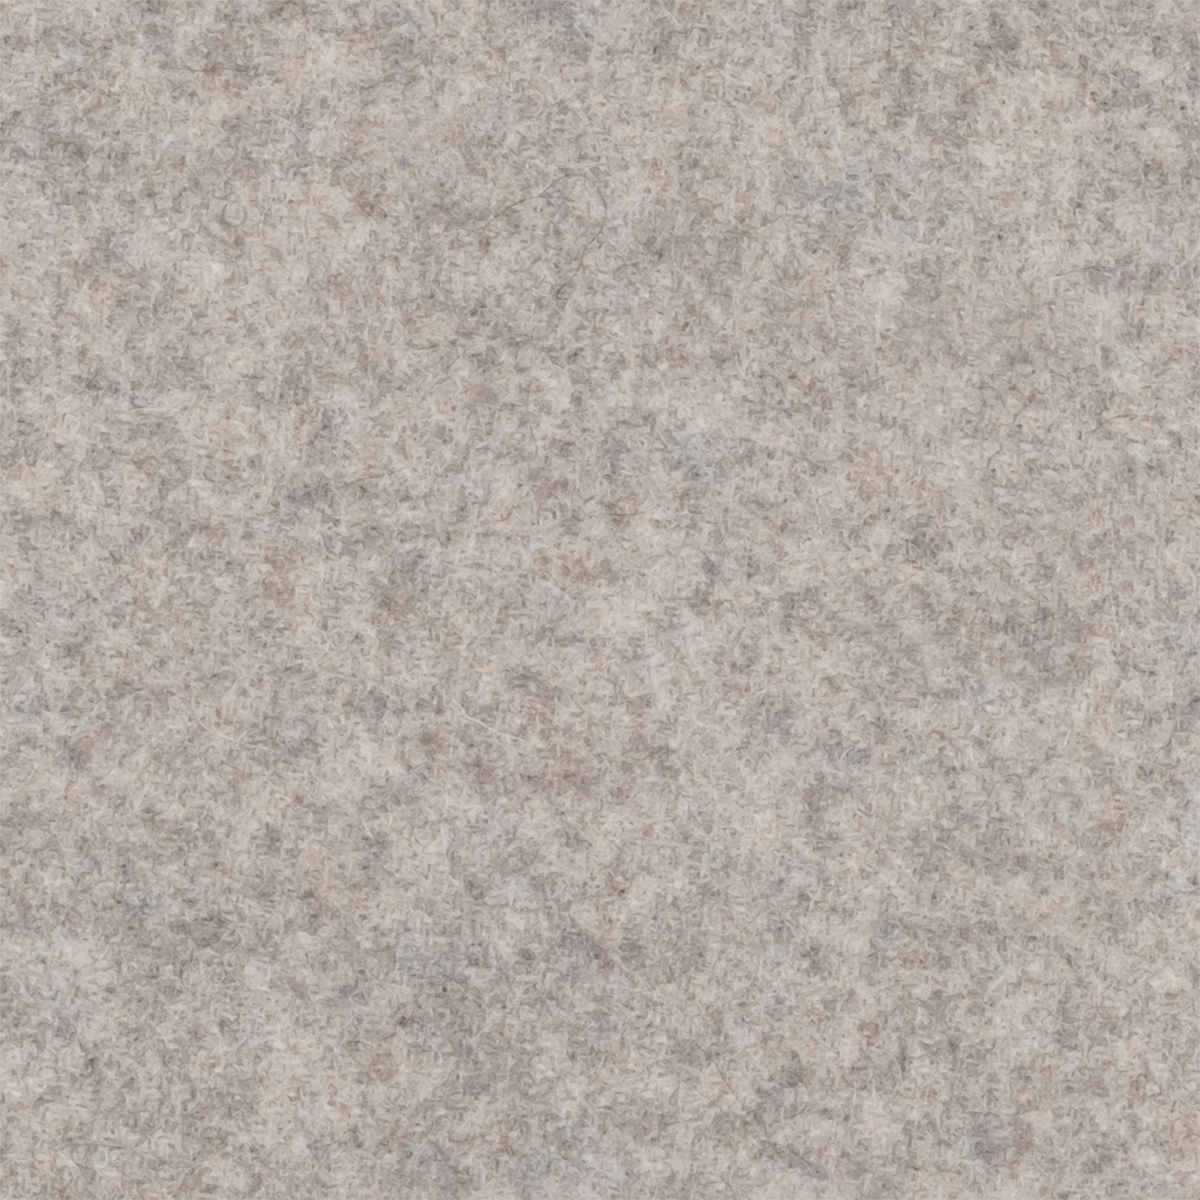 Closeup of Matouk Venus Blanket Swatch Fabric Pearl Grey Color